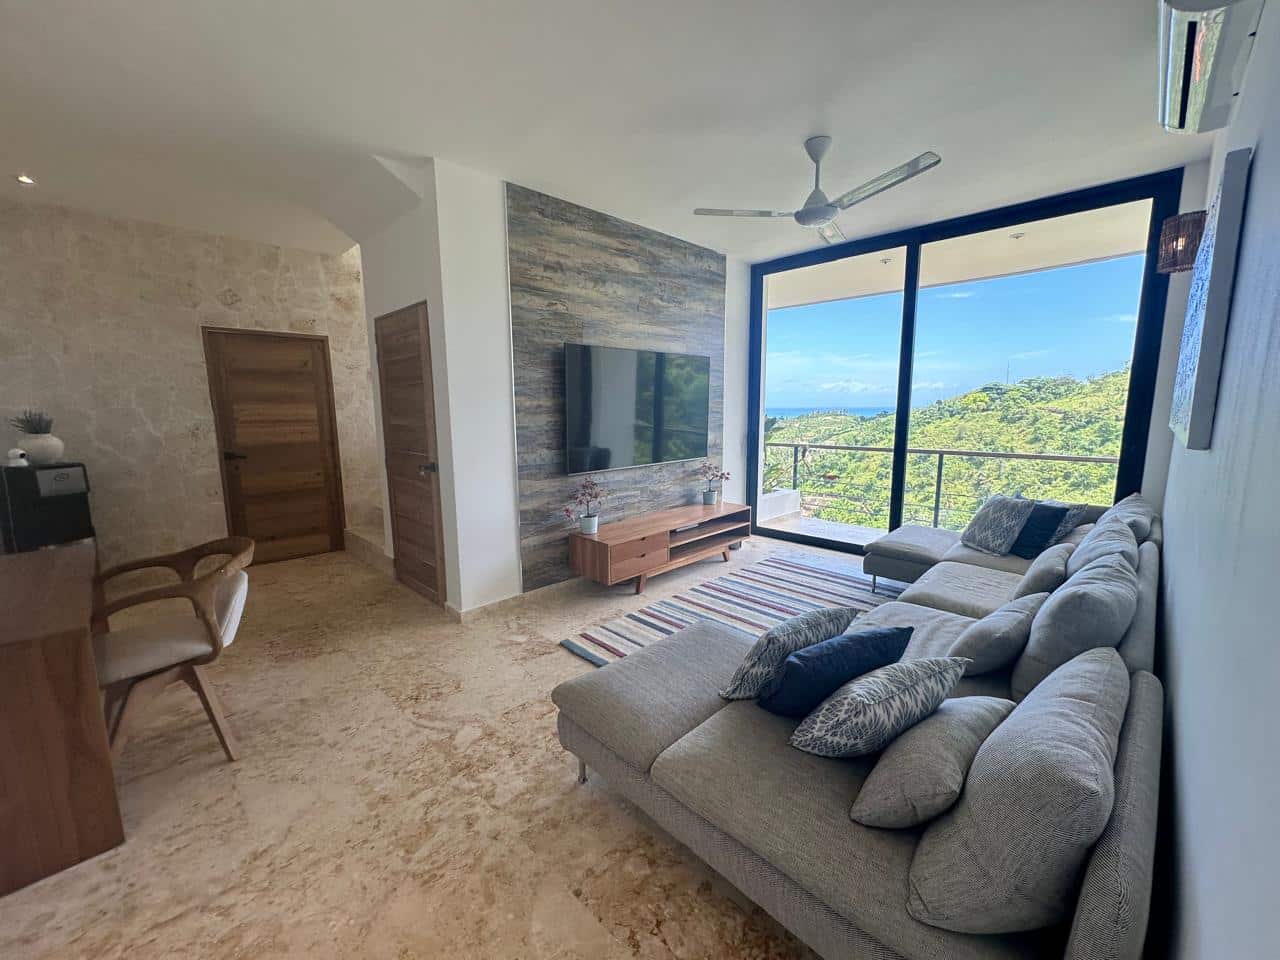 Splendid 4-bedroom villa with ocean vista - Las Terrenas Real Estate - Ocean Edge Dominican Republic (25)